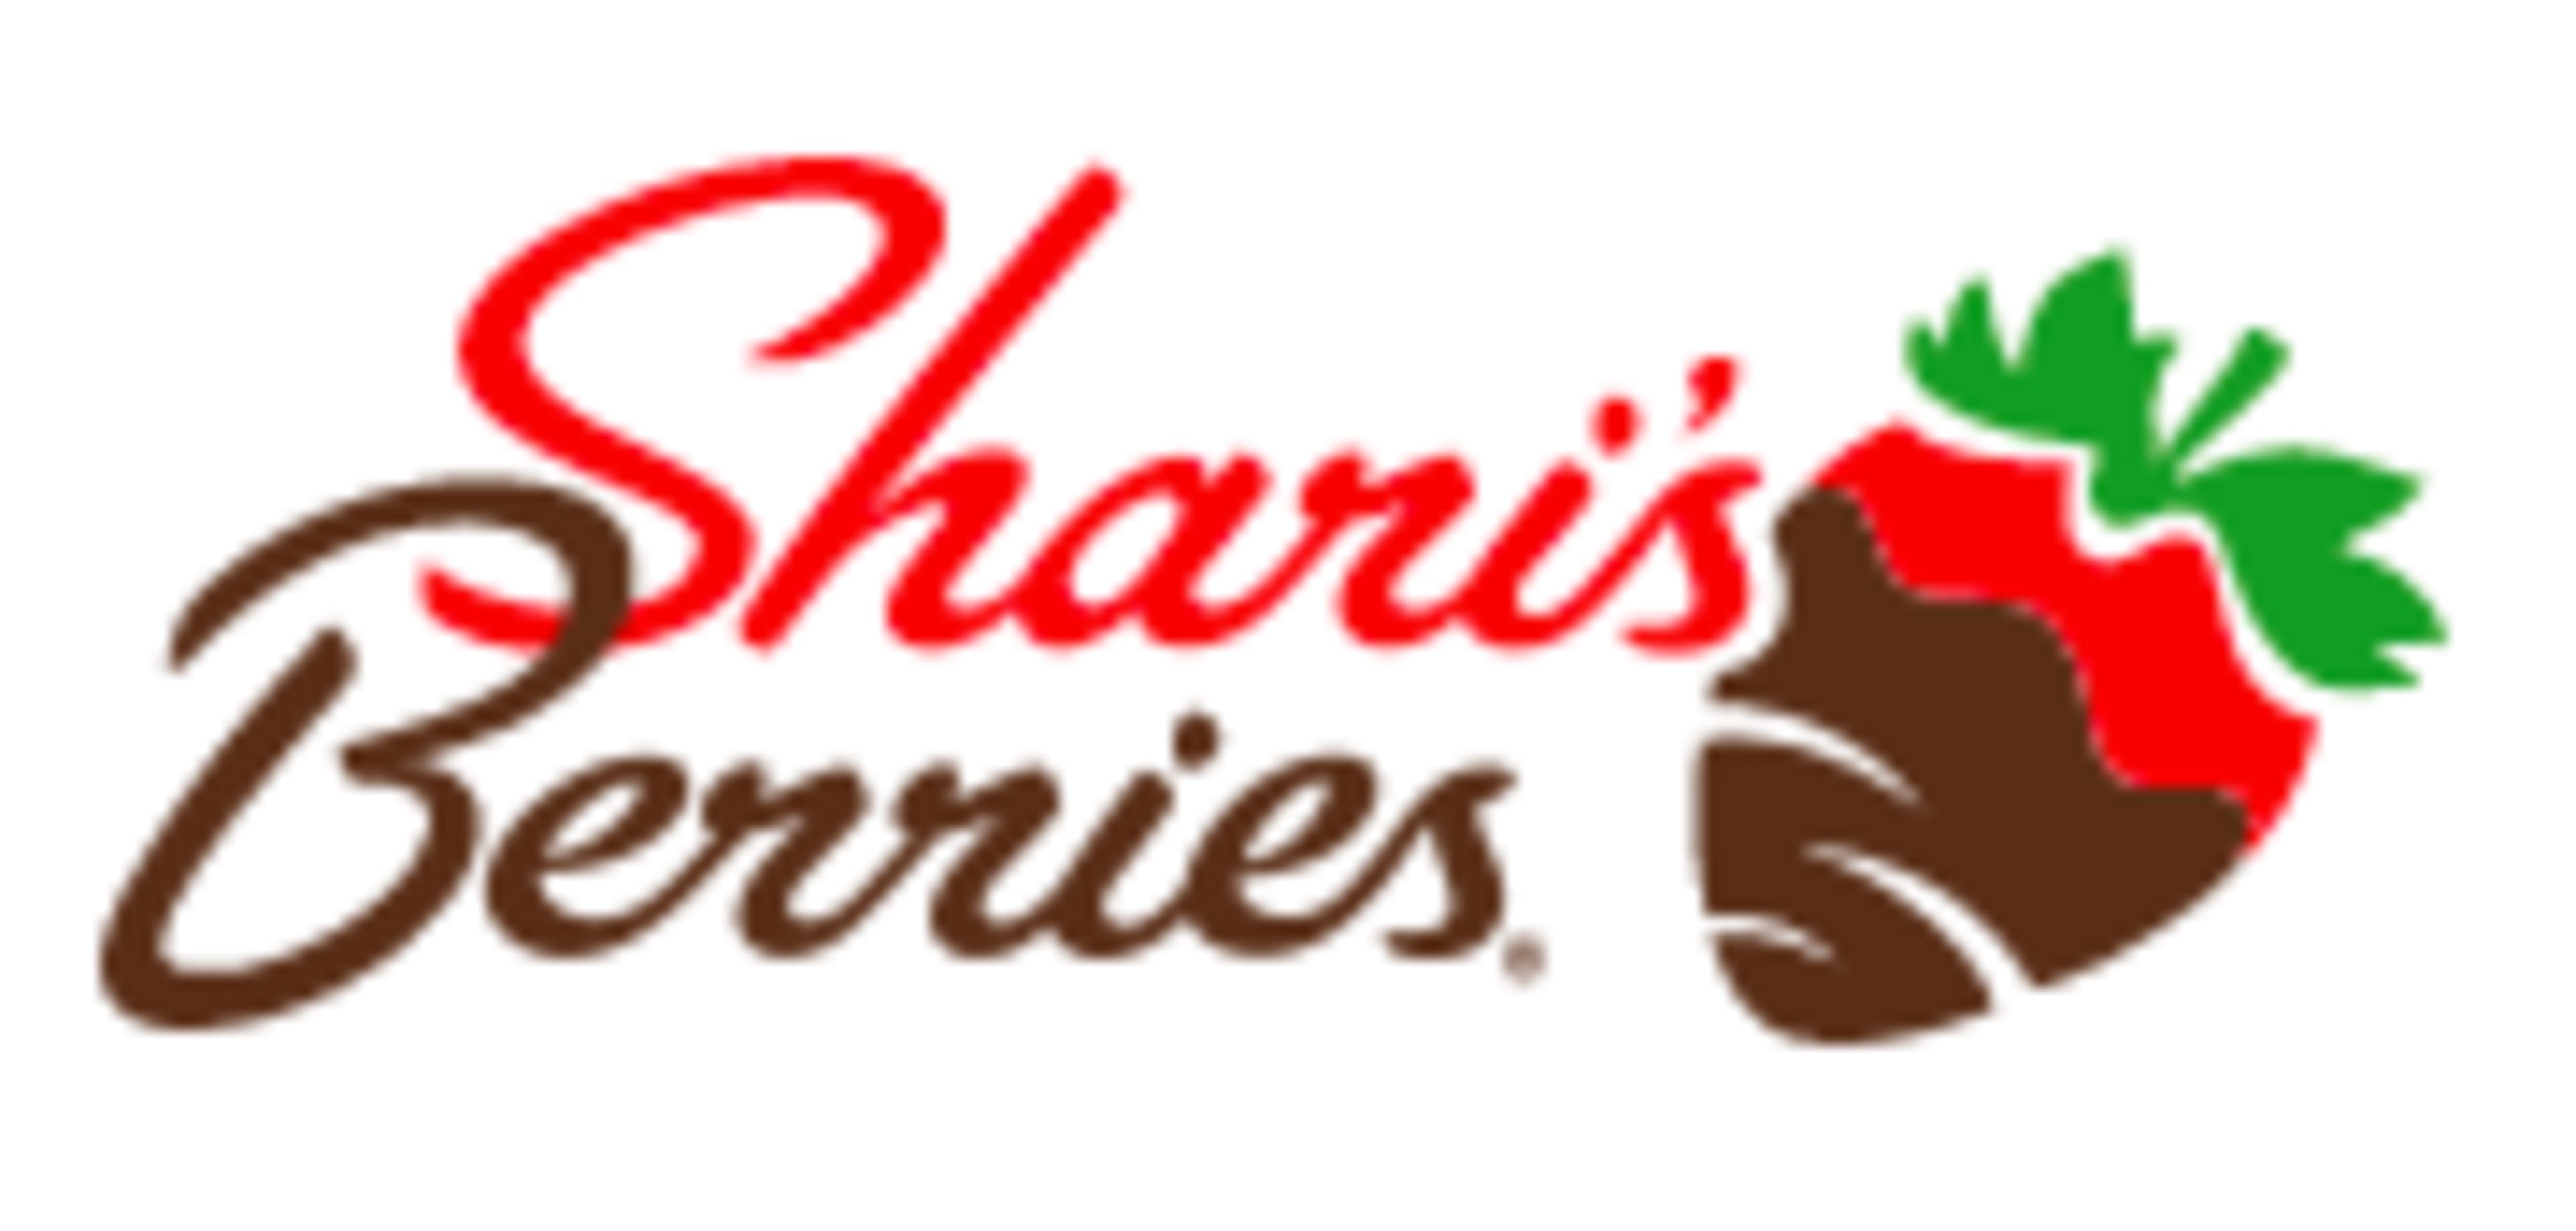 Shari's Berries Code